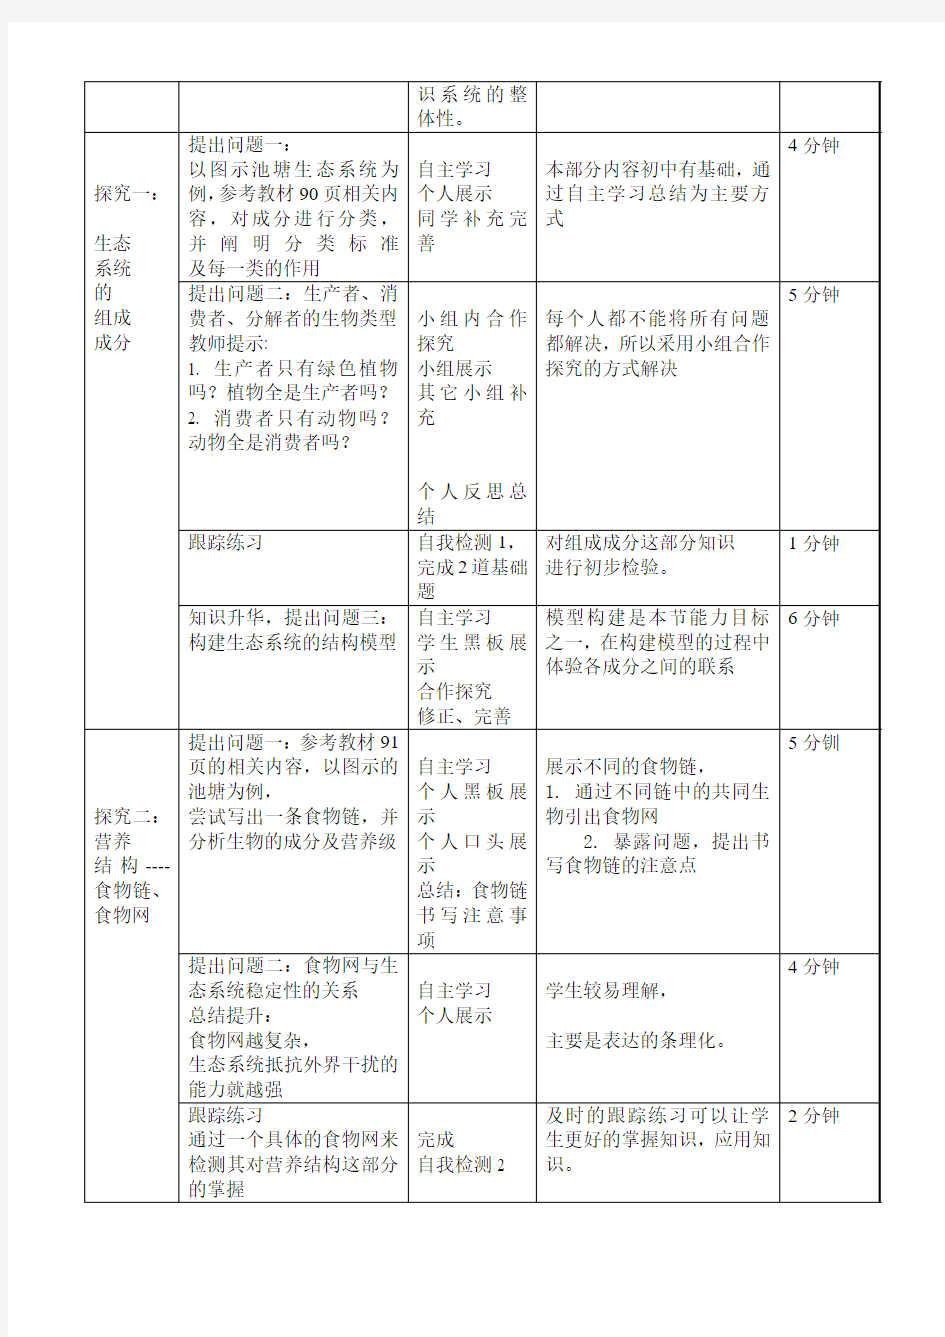 刘晓丽生态系统的结构教学案例